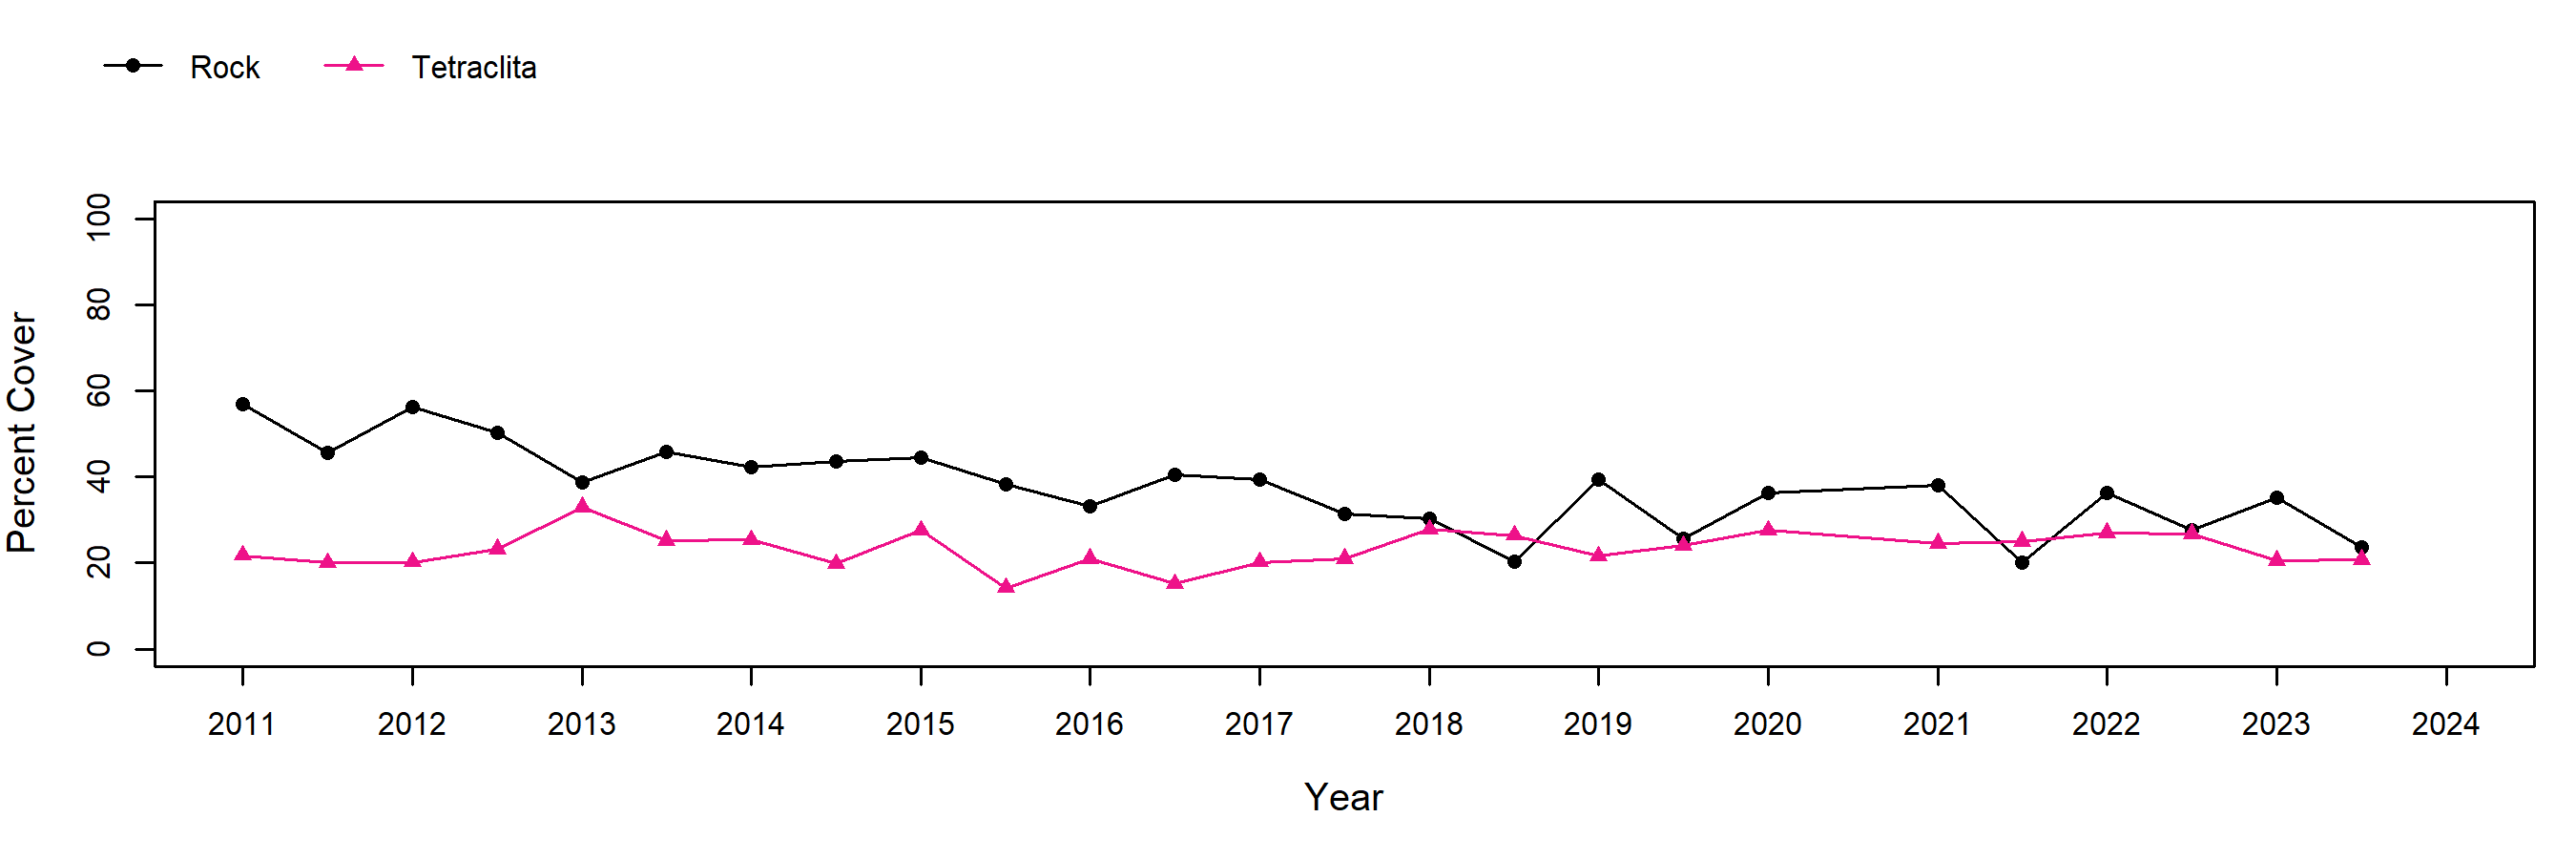 Eel Point Tetraclita trend plot